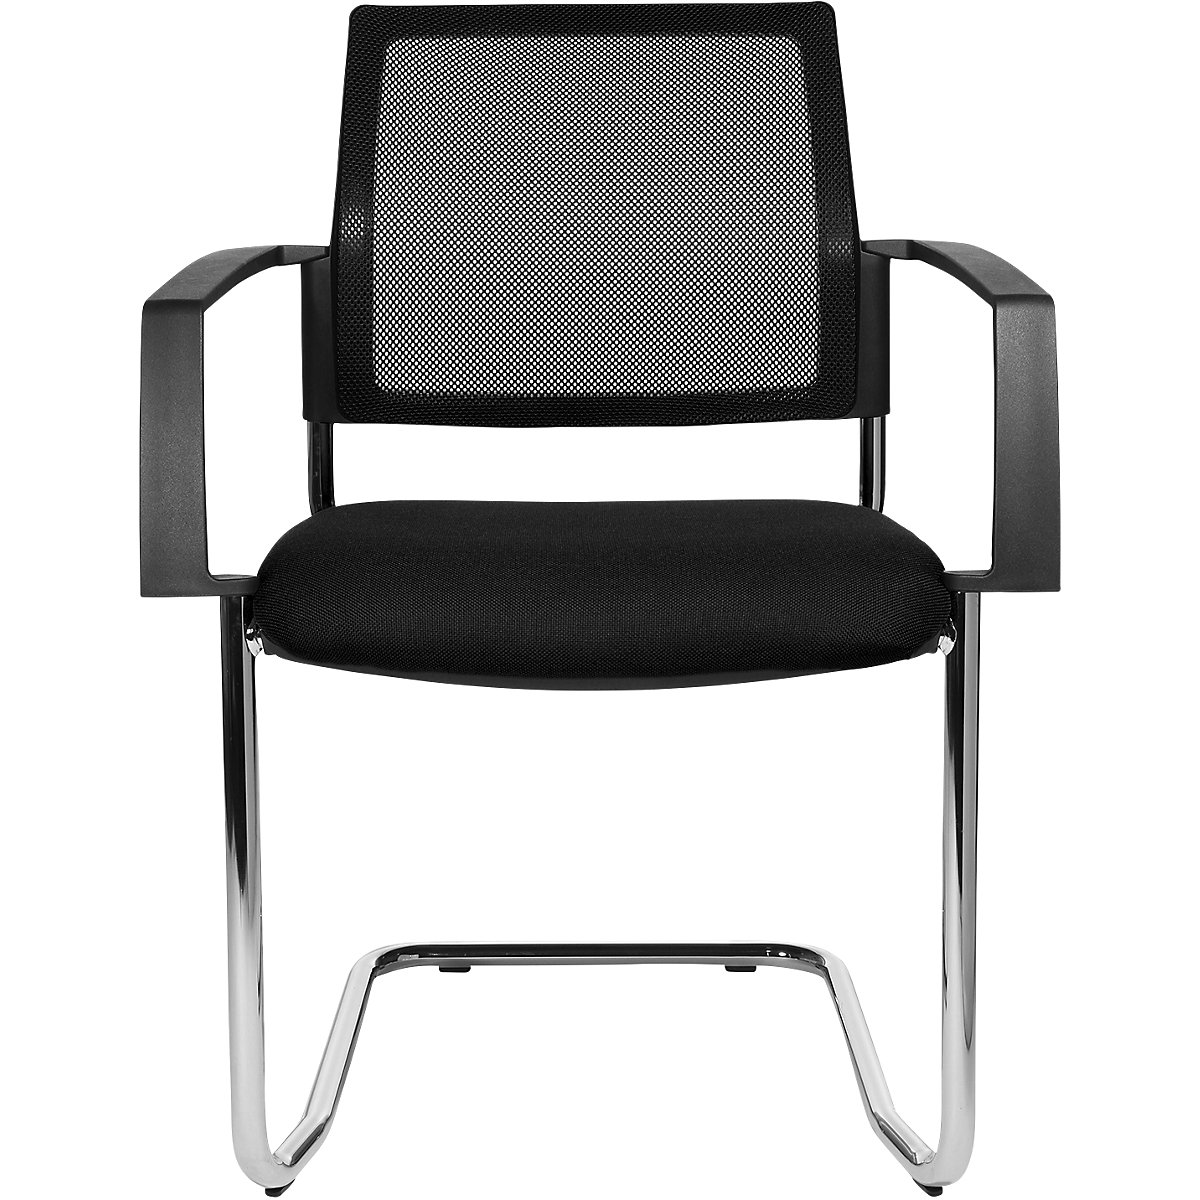 Mesh stapelstoel – Topstar, sledestoel, VE = 2 stuks, zitting zwart, frame chroom-7